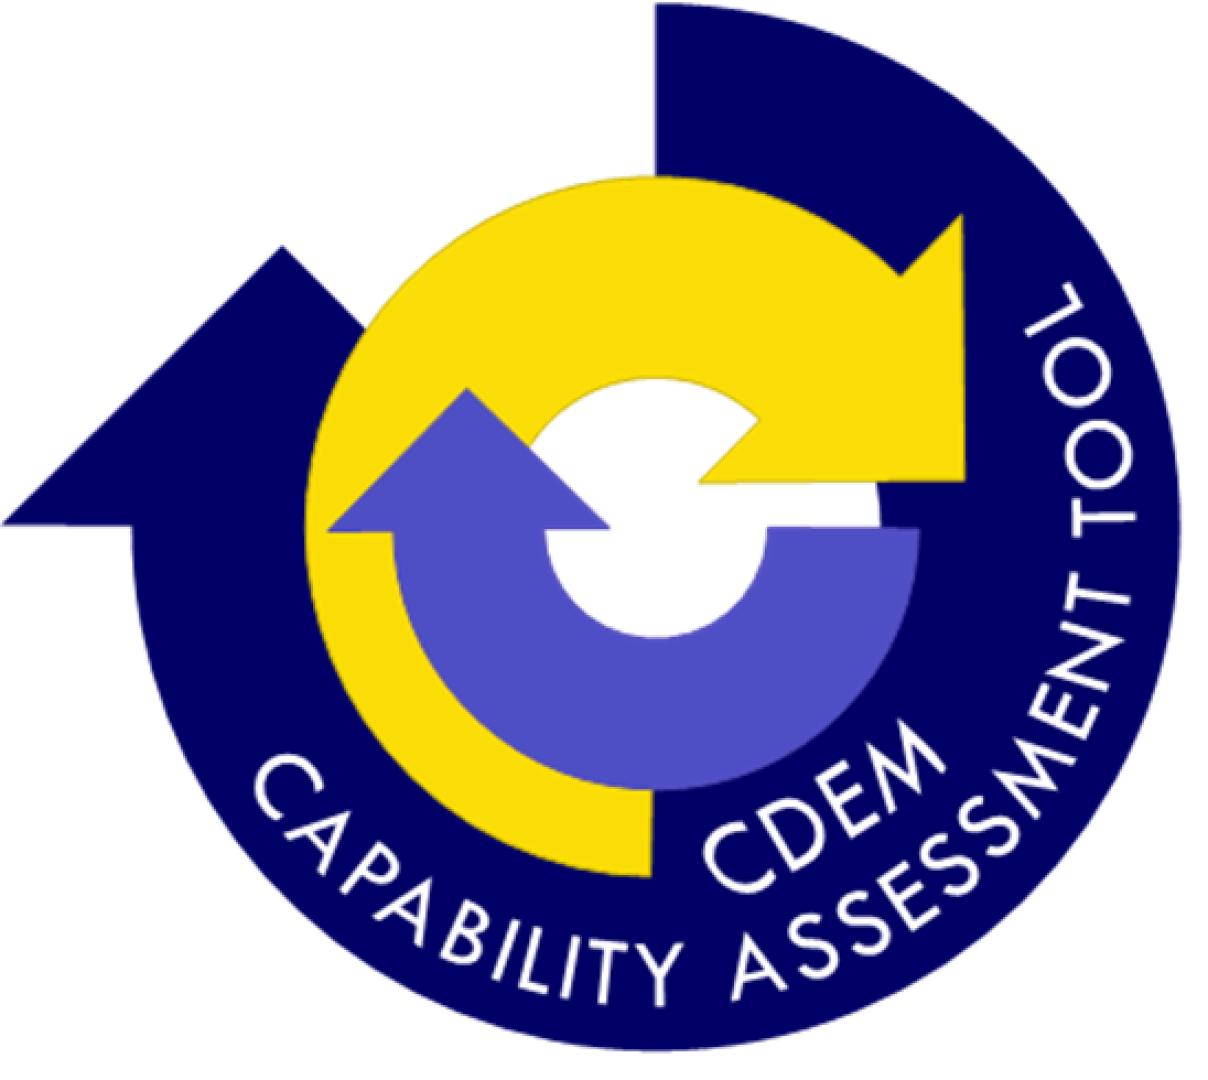 Logo of CDEM Capability Assessment Tool